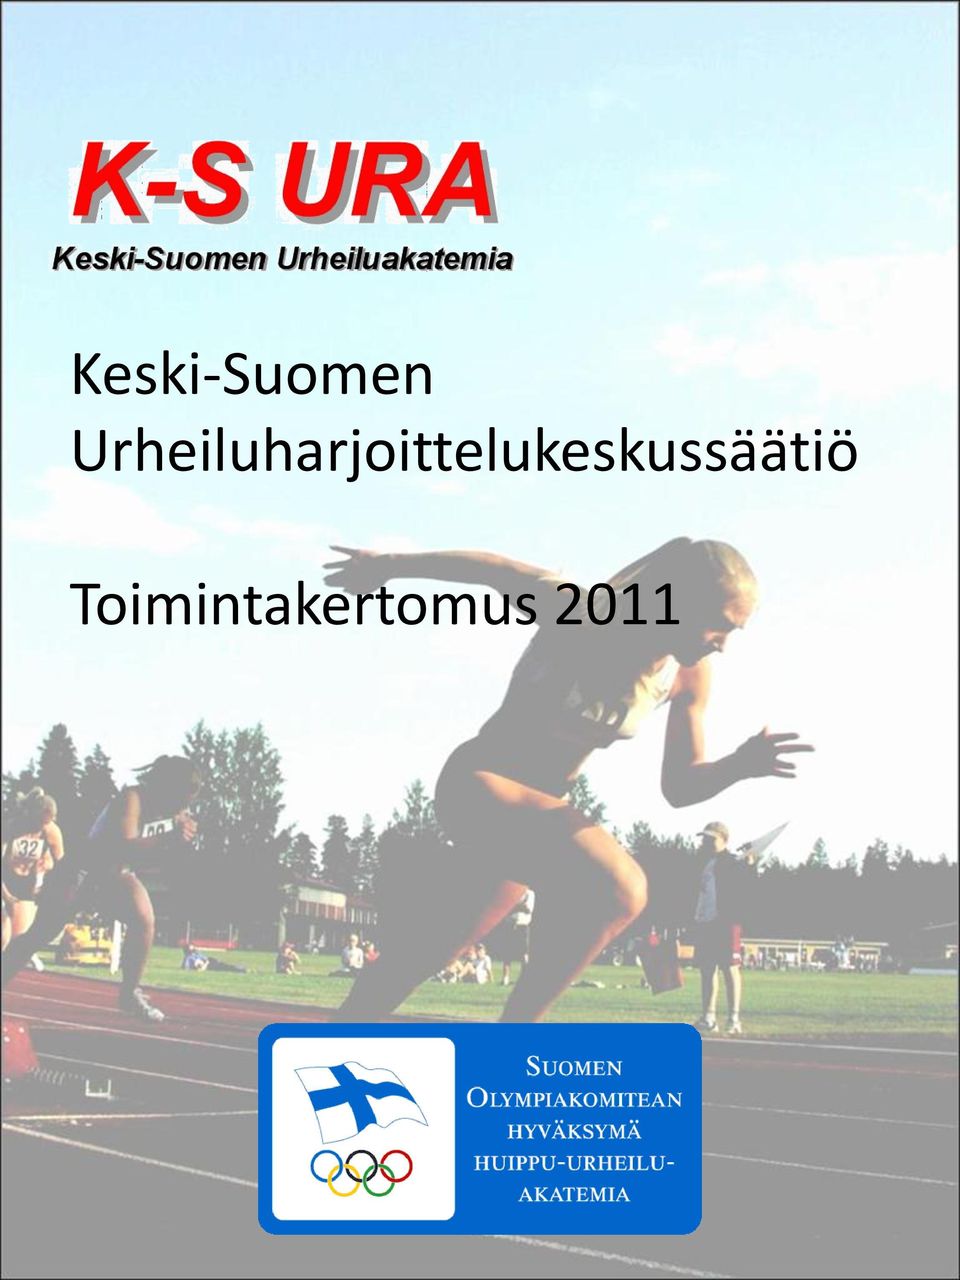 Keski-Suomen Urheiluharjoittelukeskussäätiö. Toimintakertomus PDF Free  Download